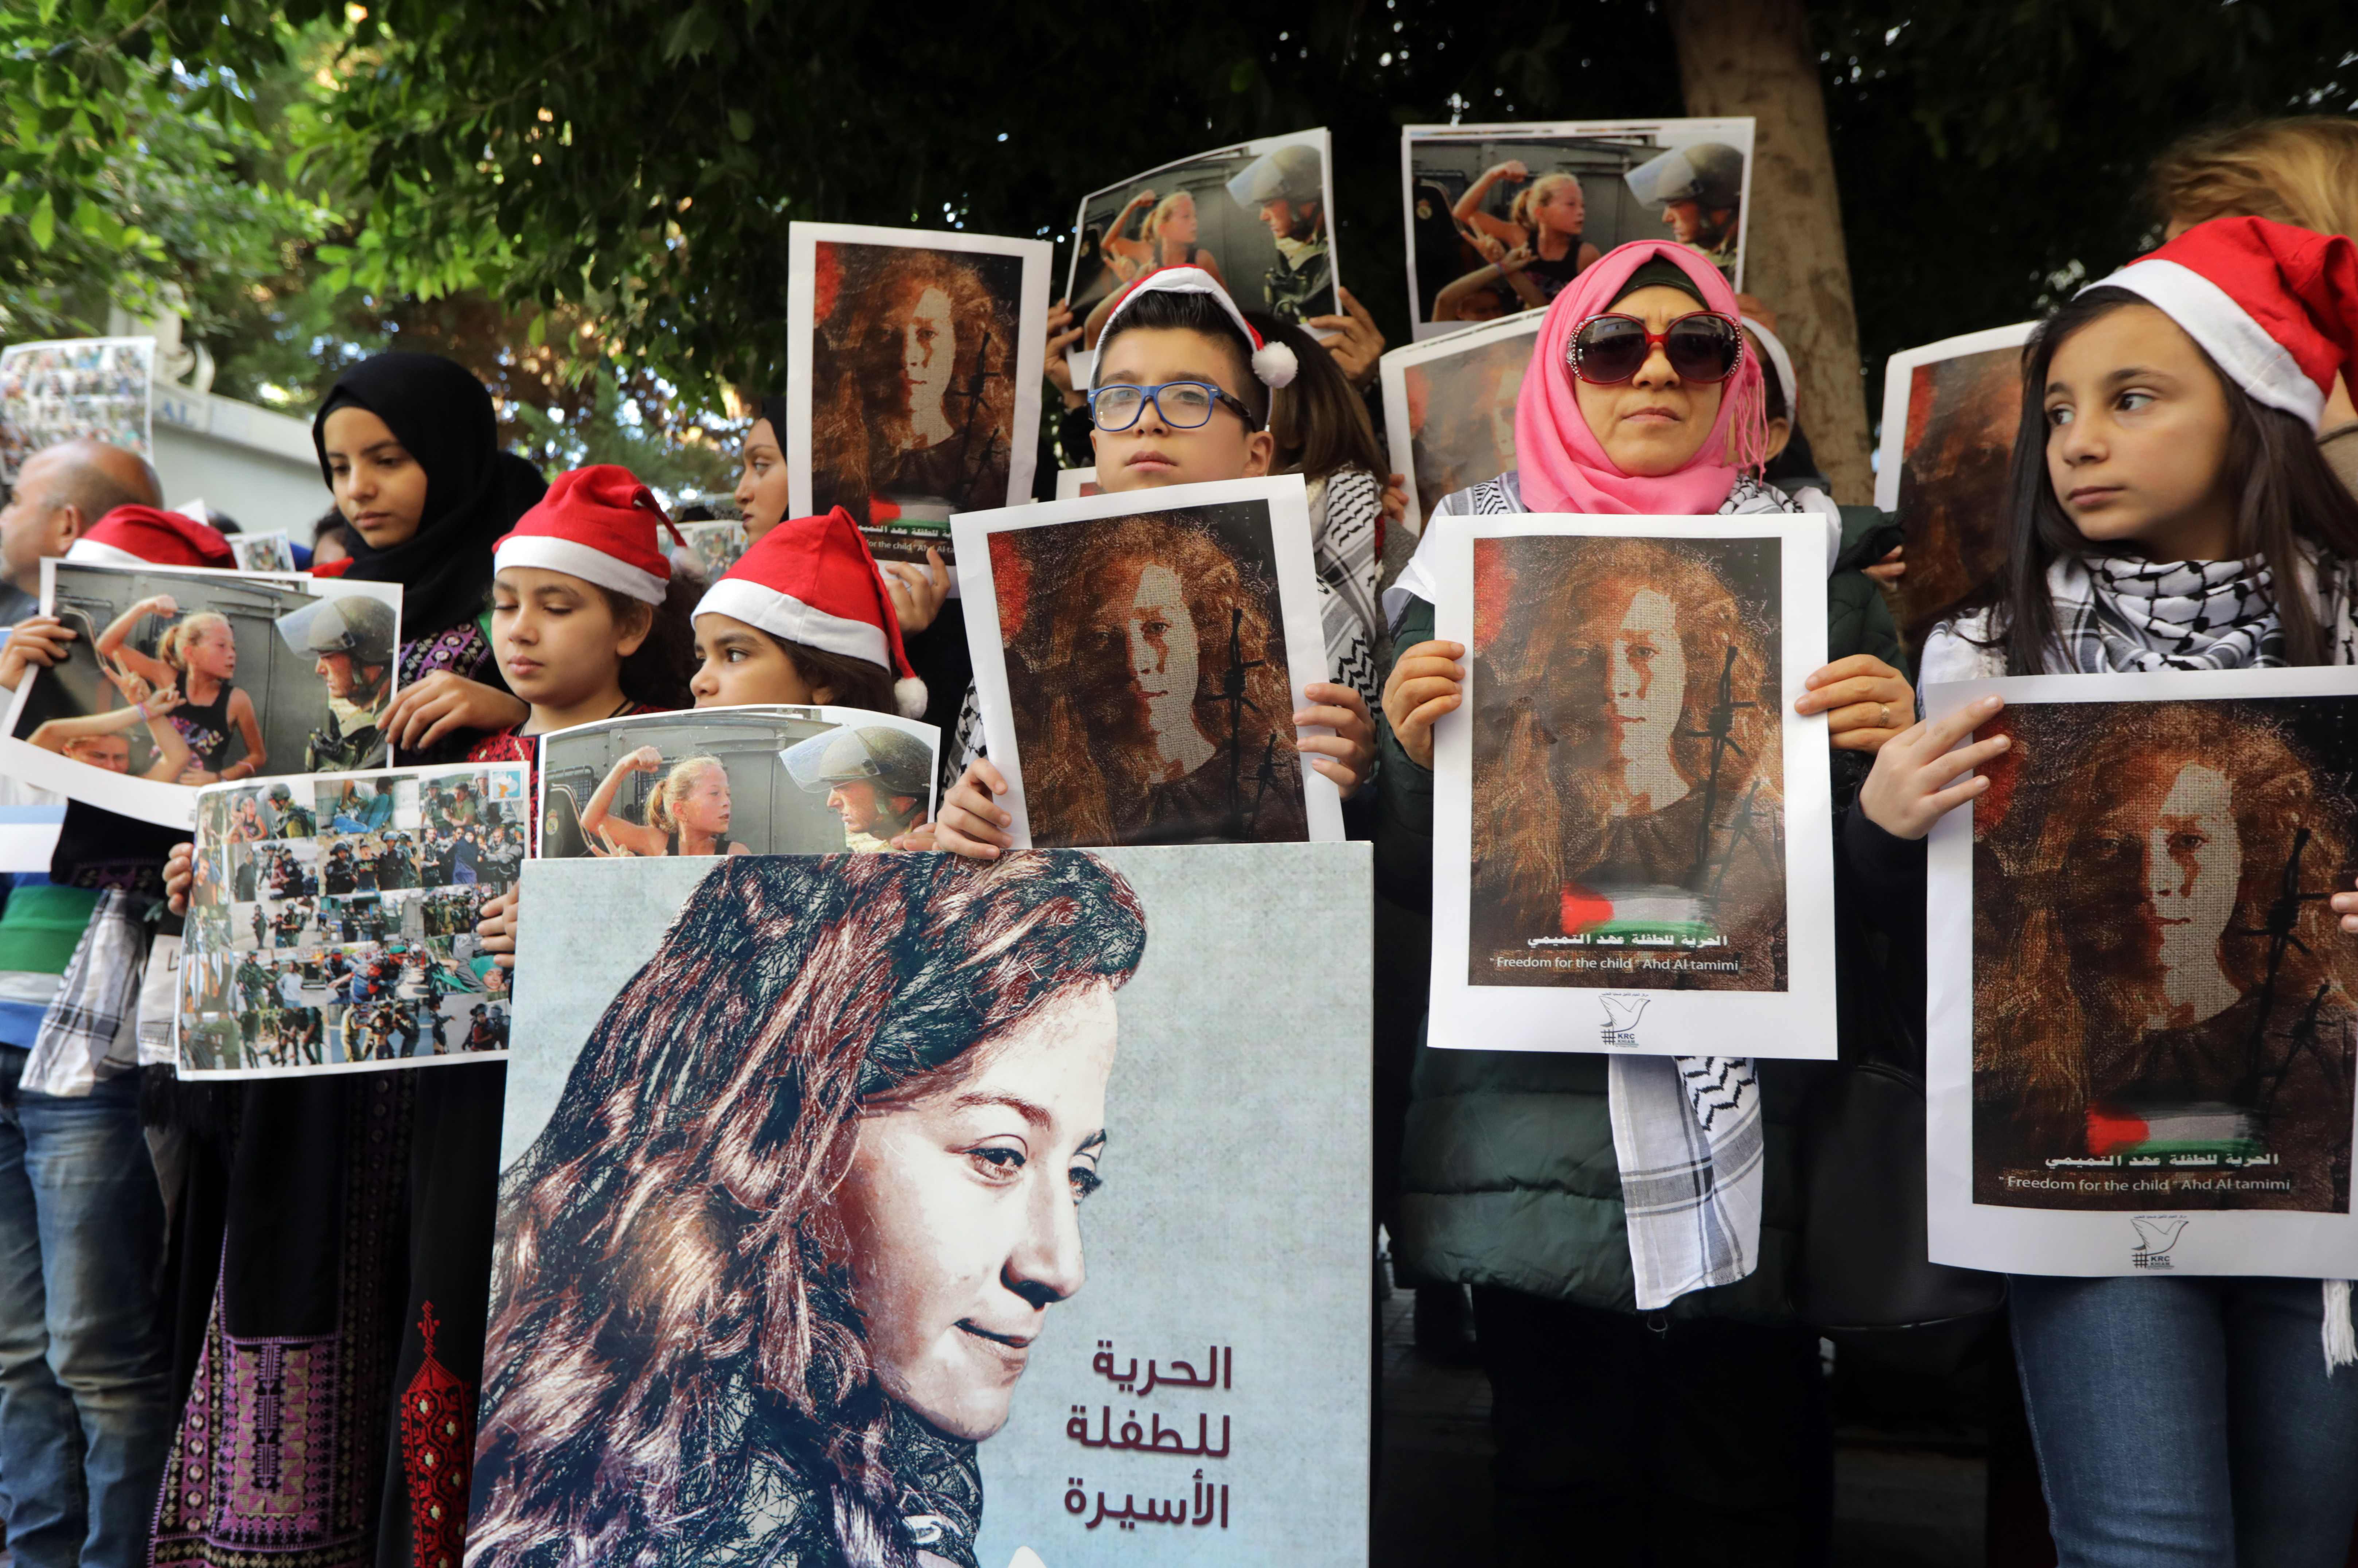  صور عهد التميمى تزين تظاهرات اللبنانيون 